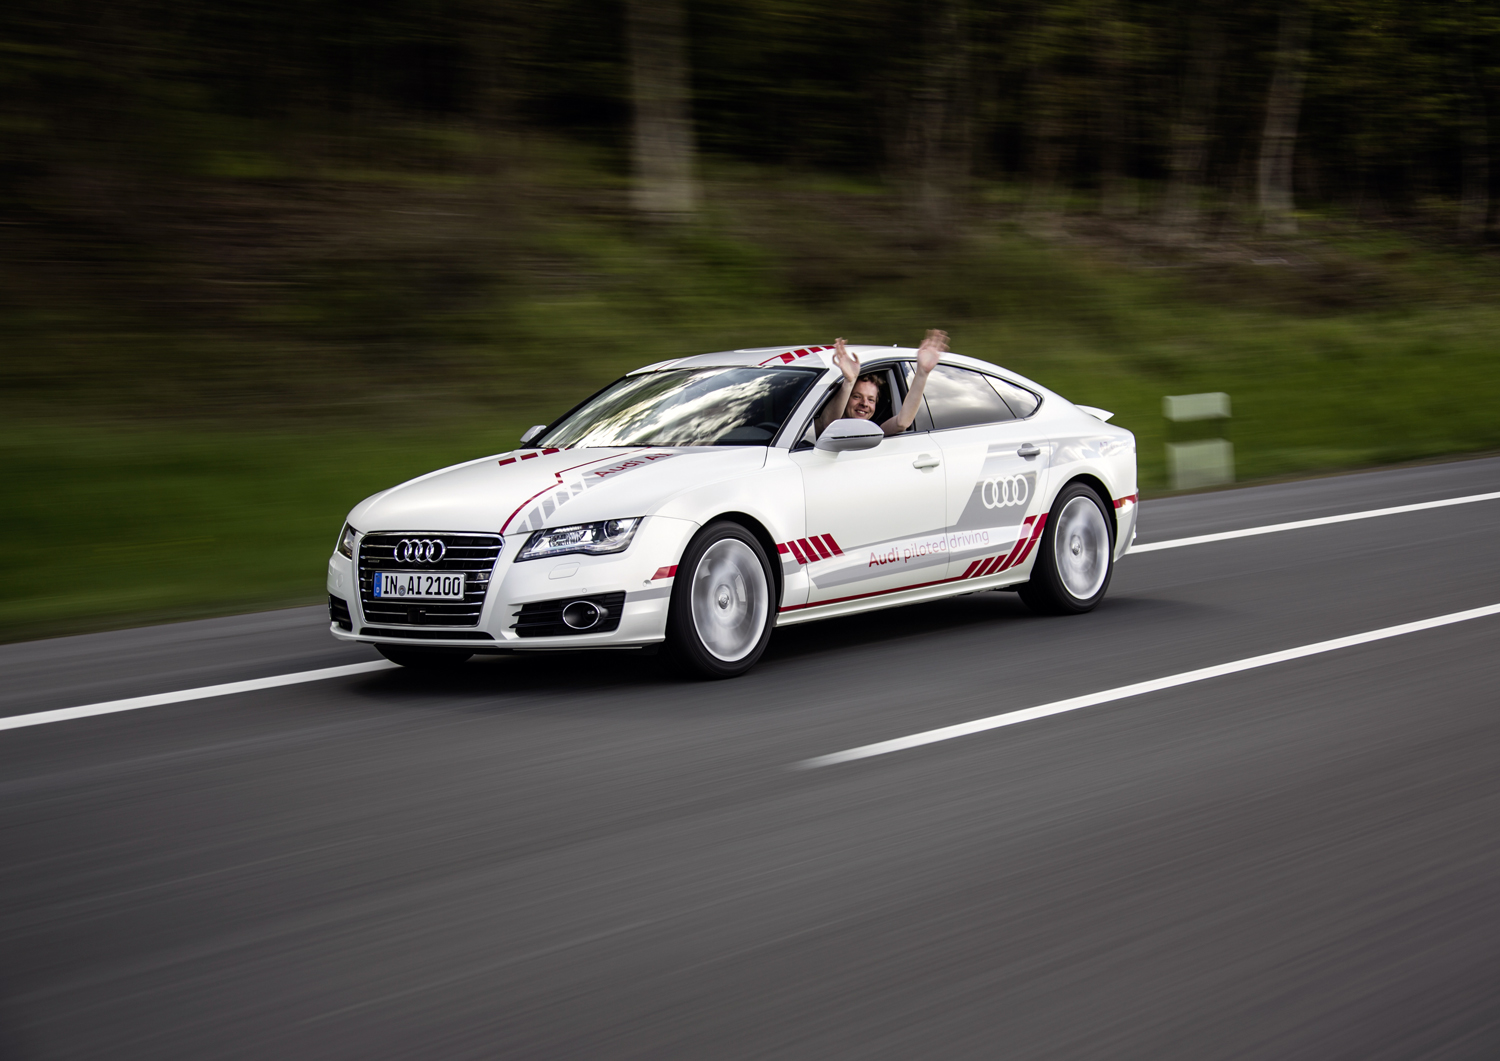 Jack - system jazdy autonomicznej Audi